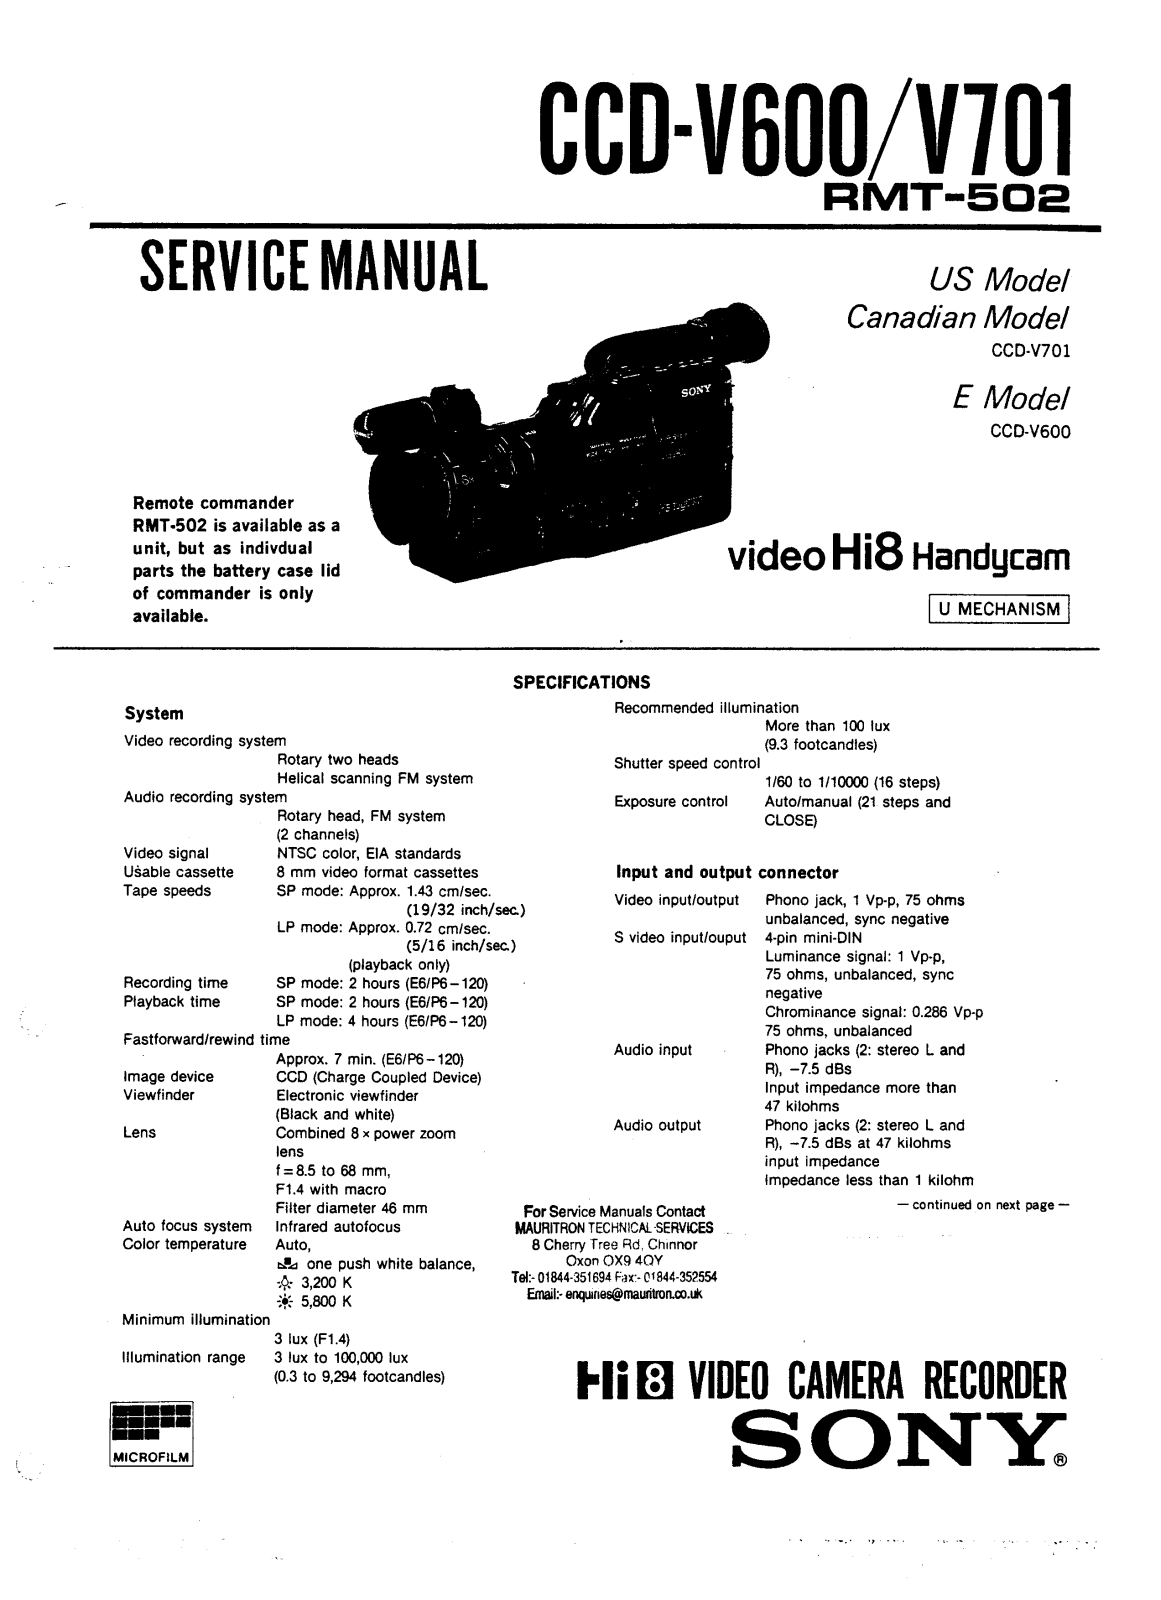 SONY CCD-V600, CCD-V701 Service Manual